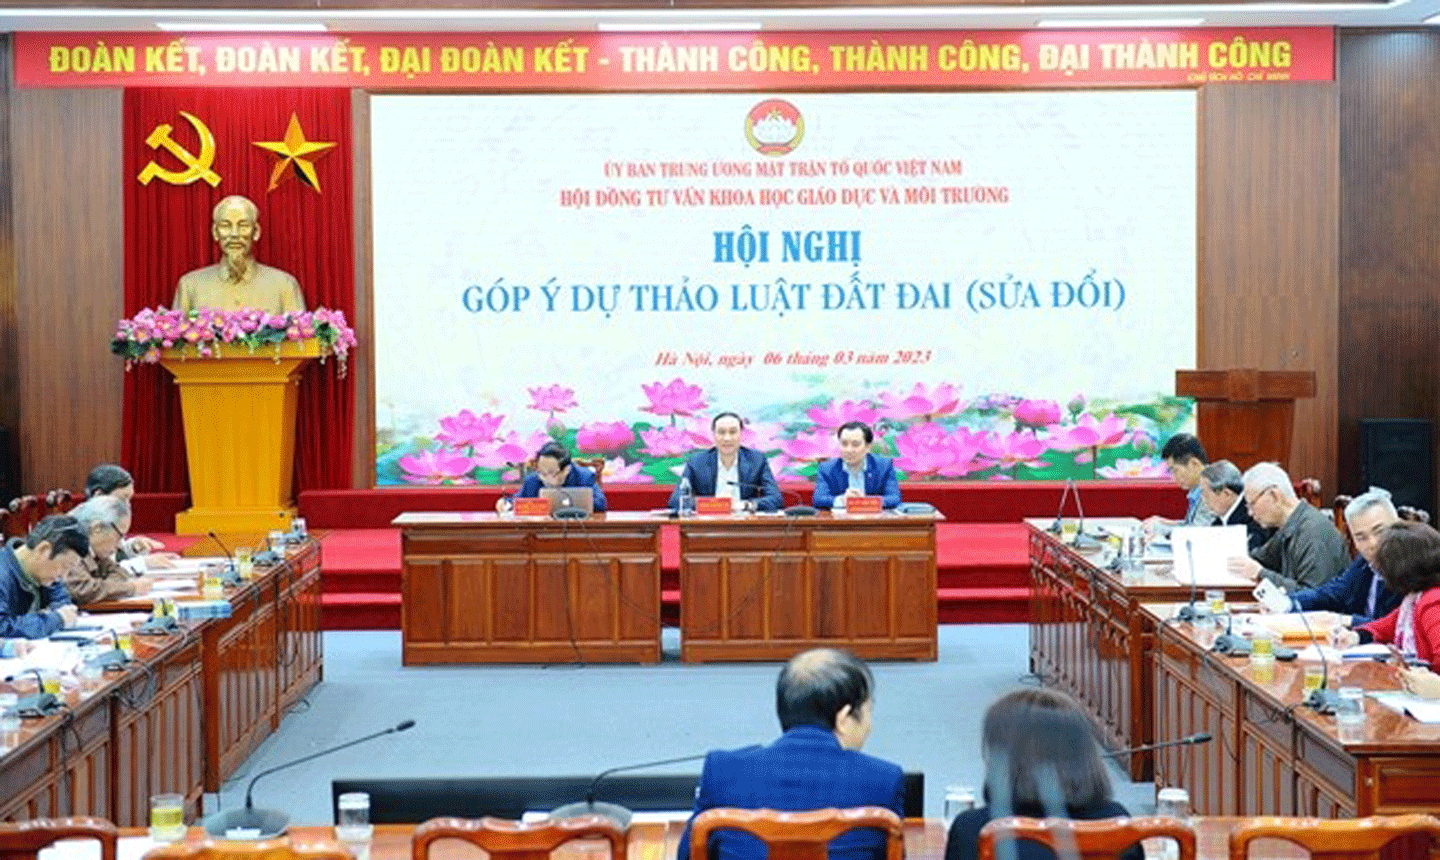 Hội nghị góp ý dự thảo Luật Đất đai (sửa đổi) do Hội đồng tư vấn Khoa học, Giáo dục và Môi trường - Uỷ ban trung ương MTTQ Việt Nam đã tổ chức.